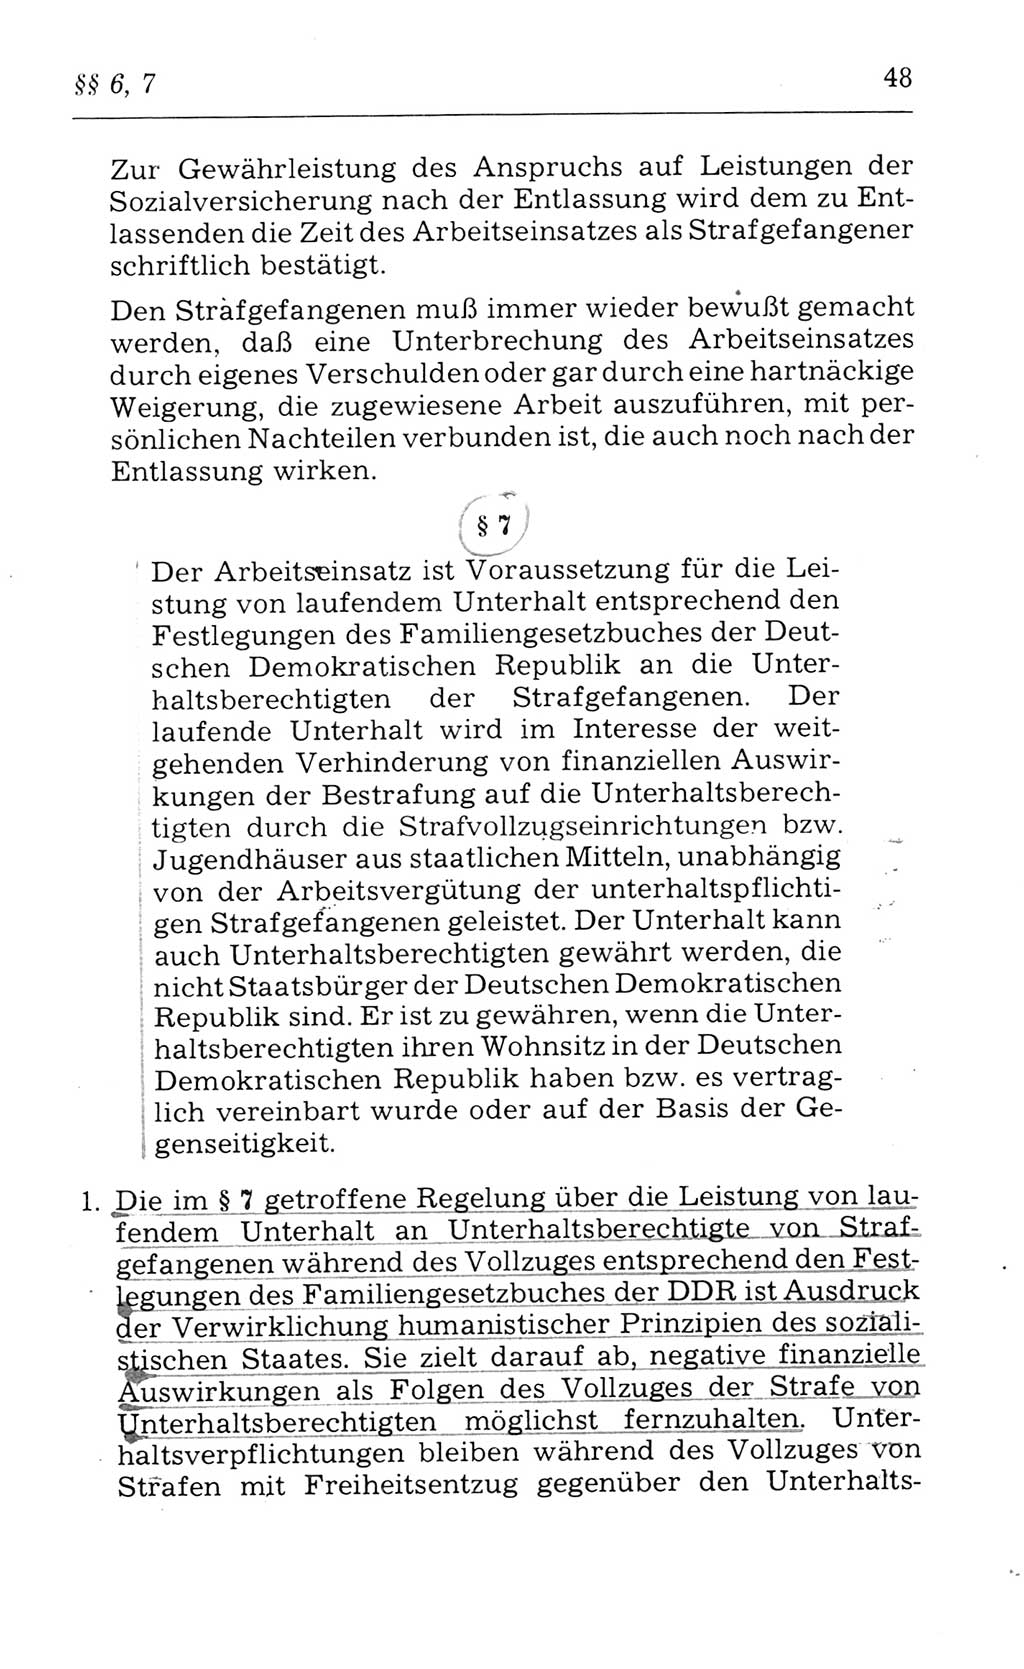 Kommentar zum Strafvollzugsgesetz [(StVG) Deutsche Demokratische Republik (DDR)] 1980, Seite 48 (Komm. StVG DDR 1980, S. 48)